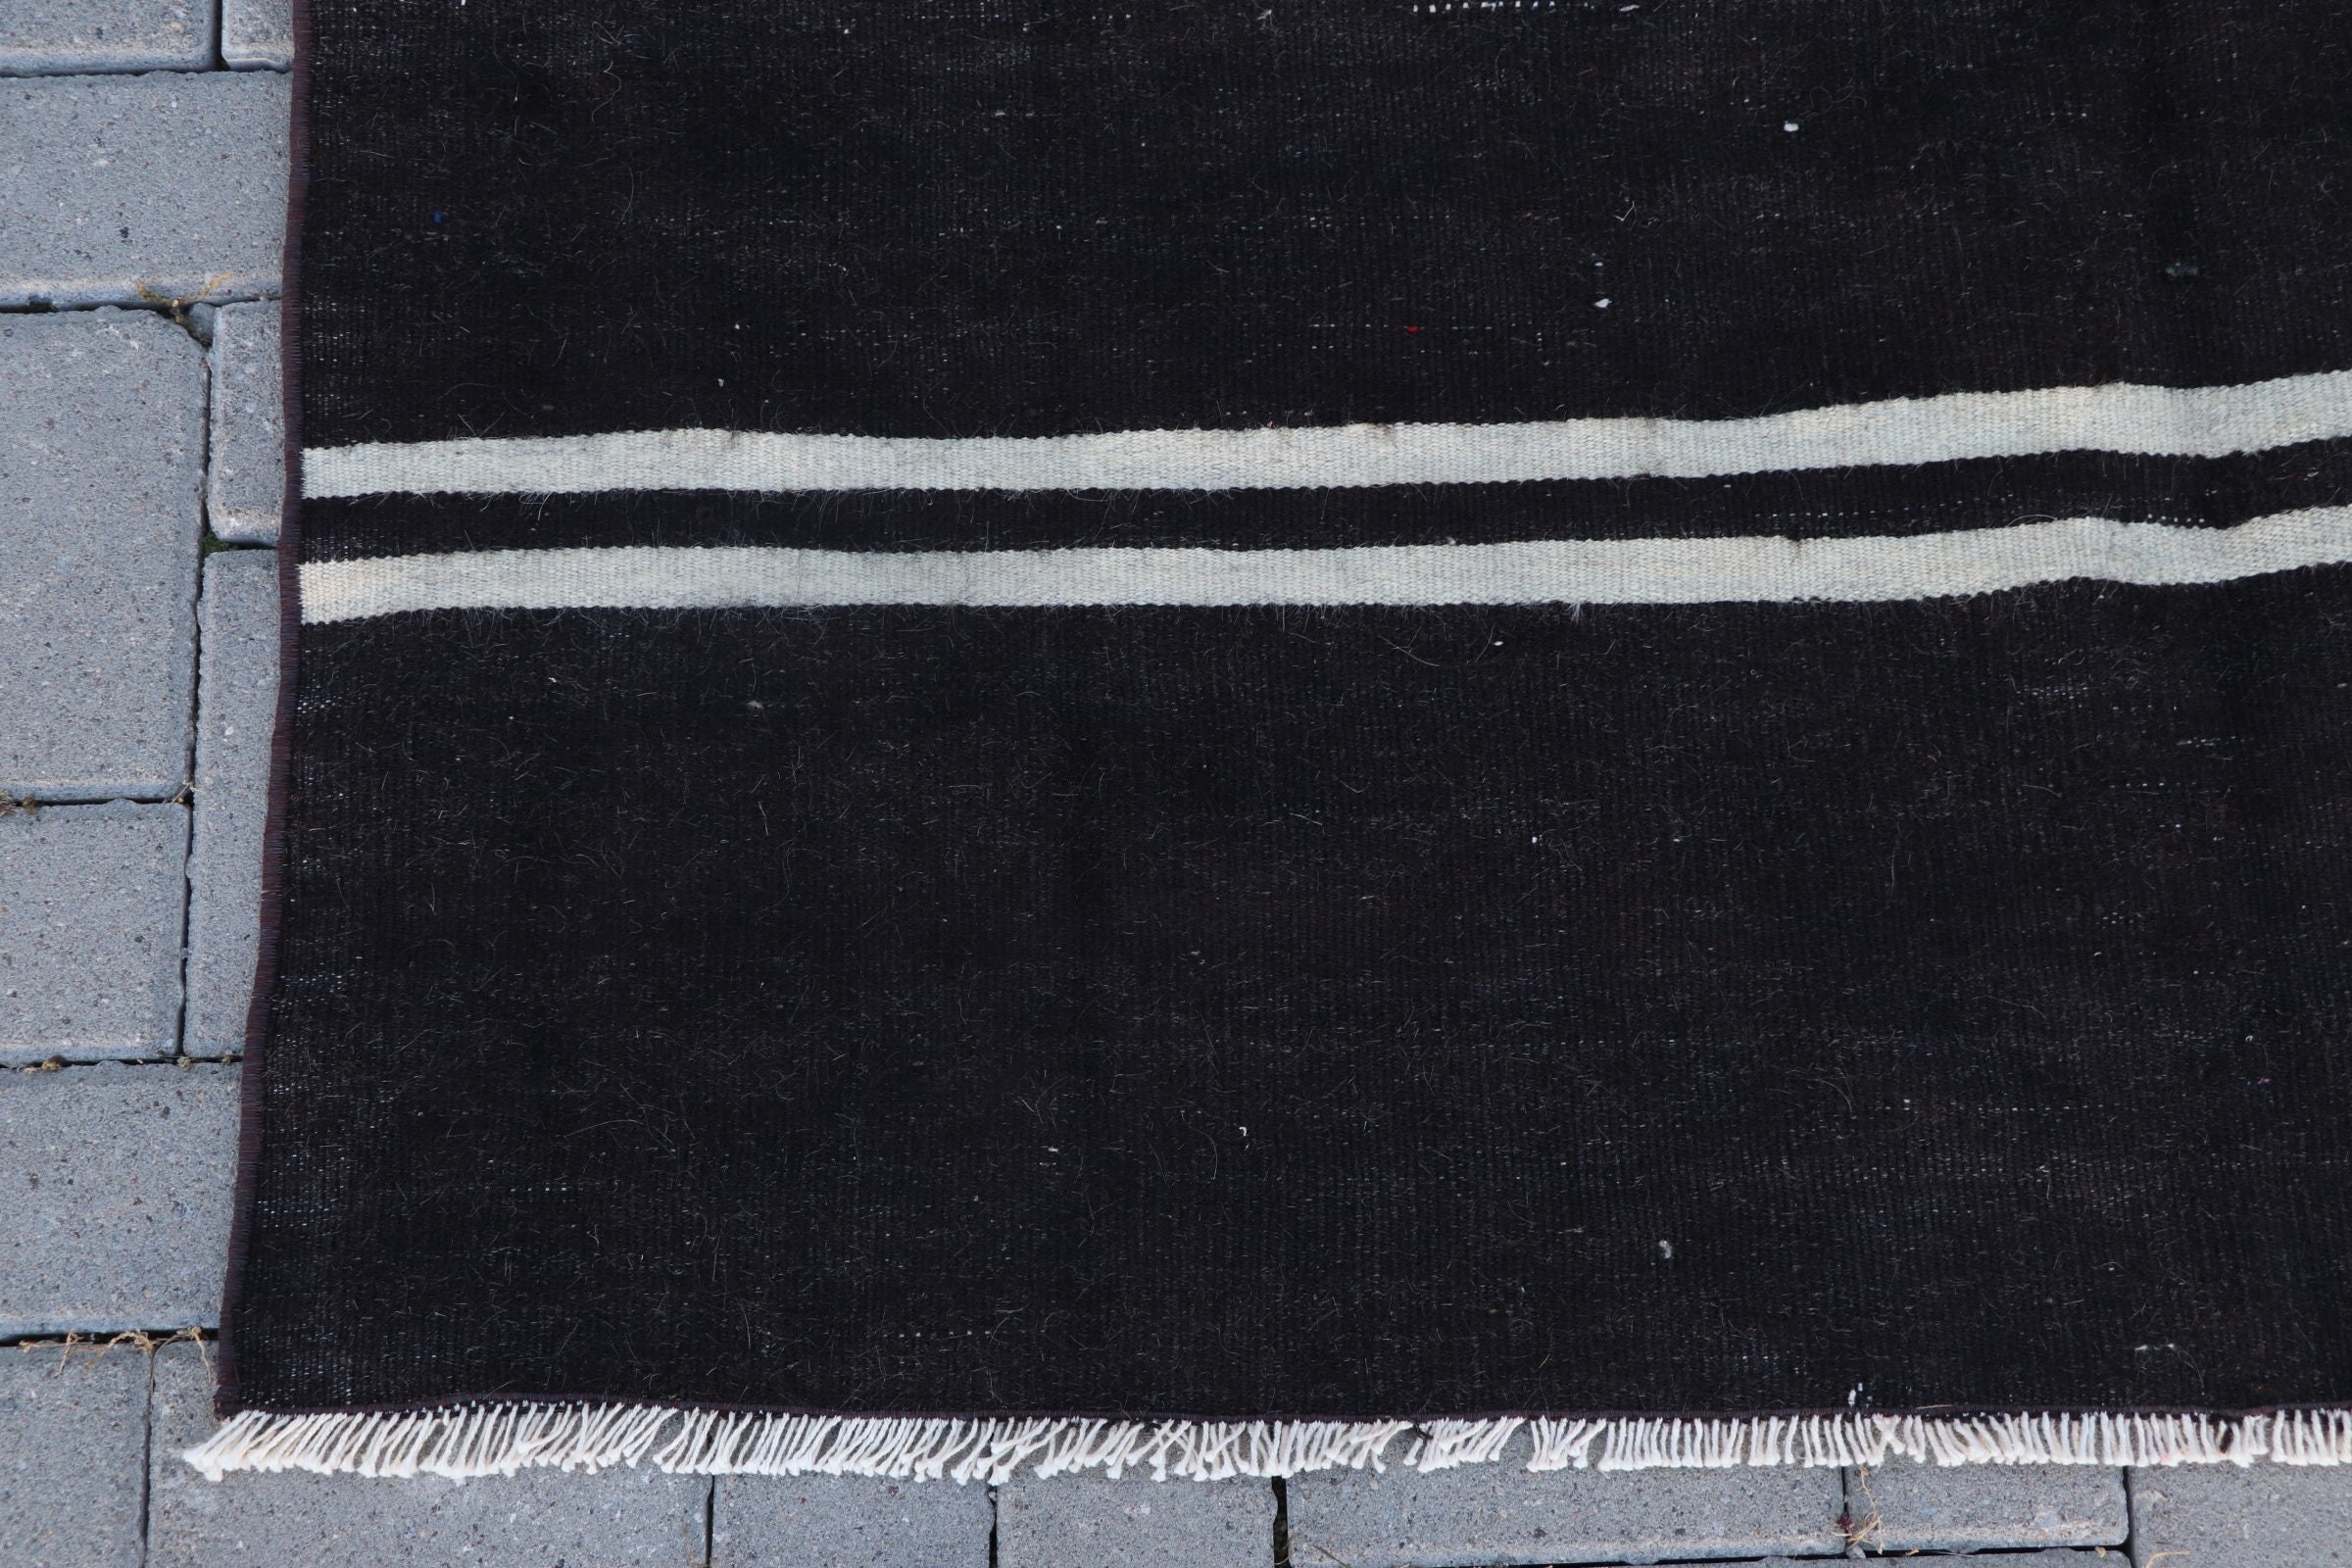 Black Oriental Rug, Turkish Rugs, Floor Rugs, Vintage Rug, 4.8x7.5 ft Area Rug, Dining Room Rugs, Anatolian Rugs, Kitchen Rug, Kilim